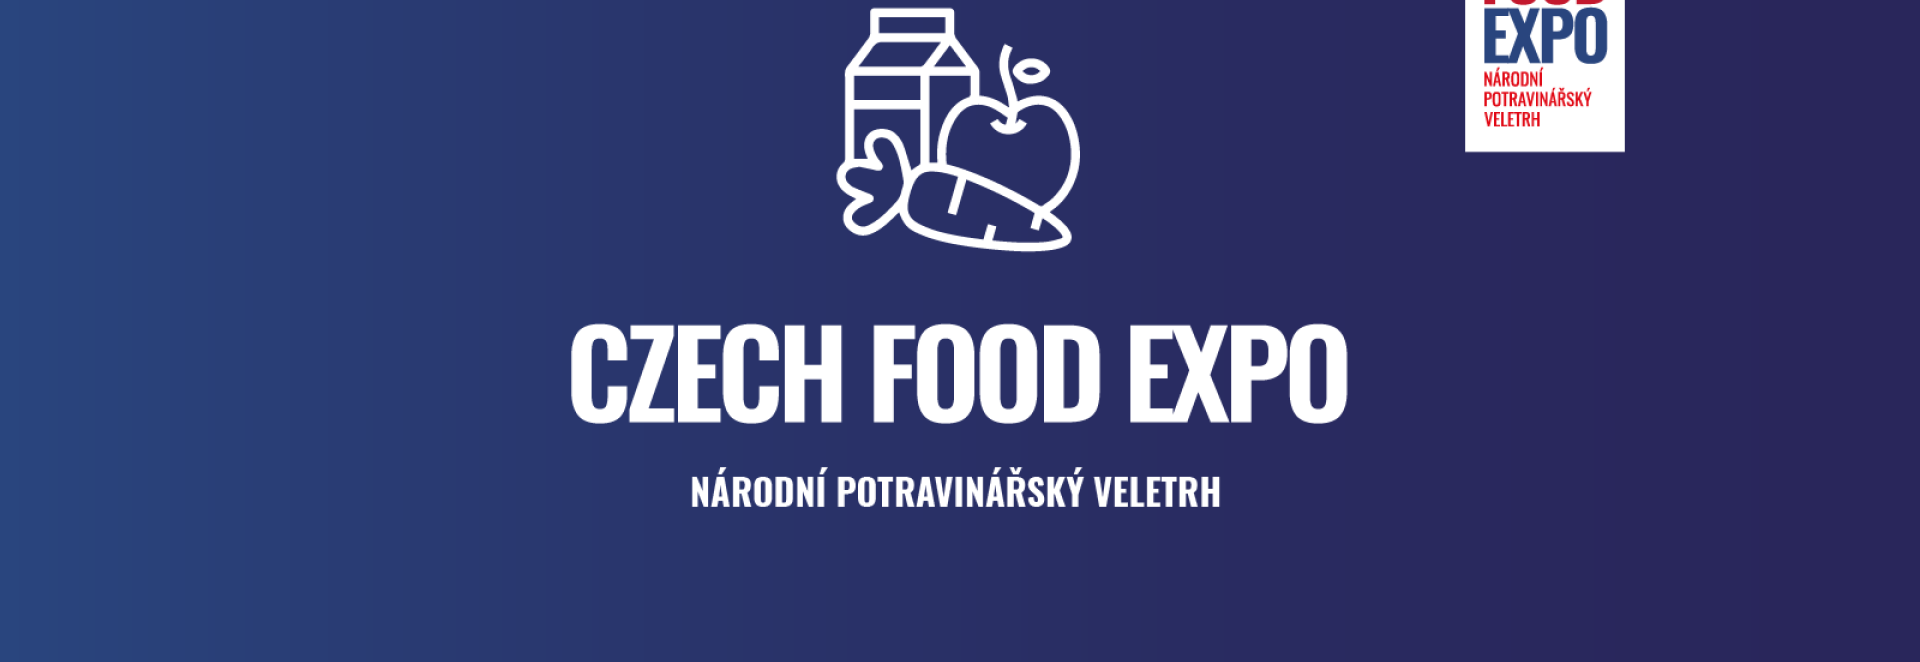 Potravinářský veletrh Czech Food Expo nabídne kulinářskou zábavu